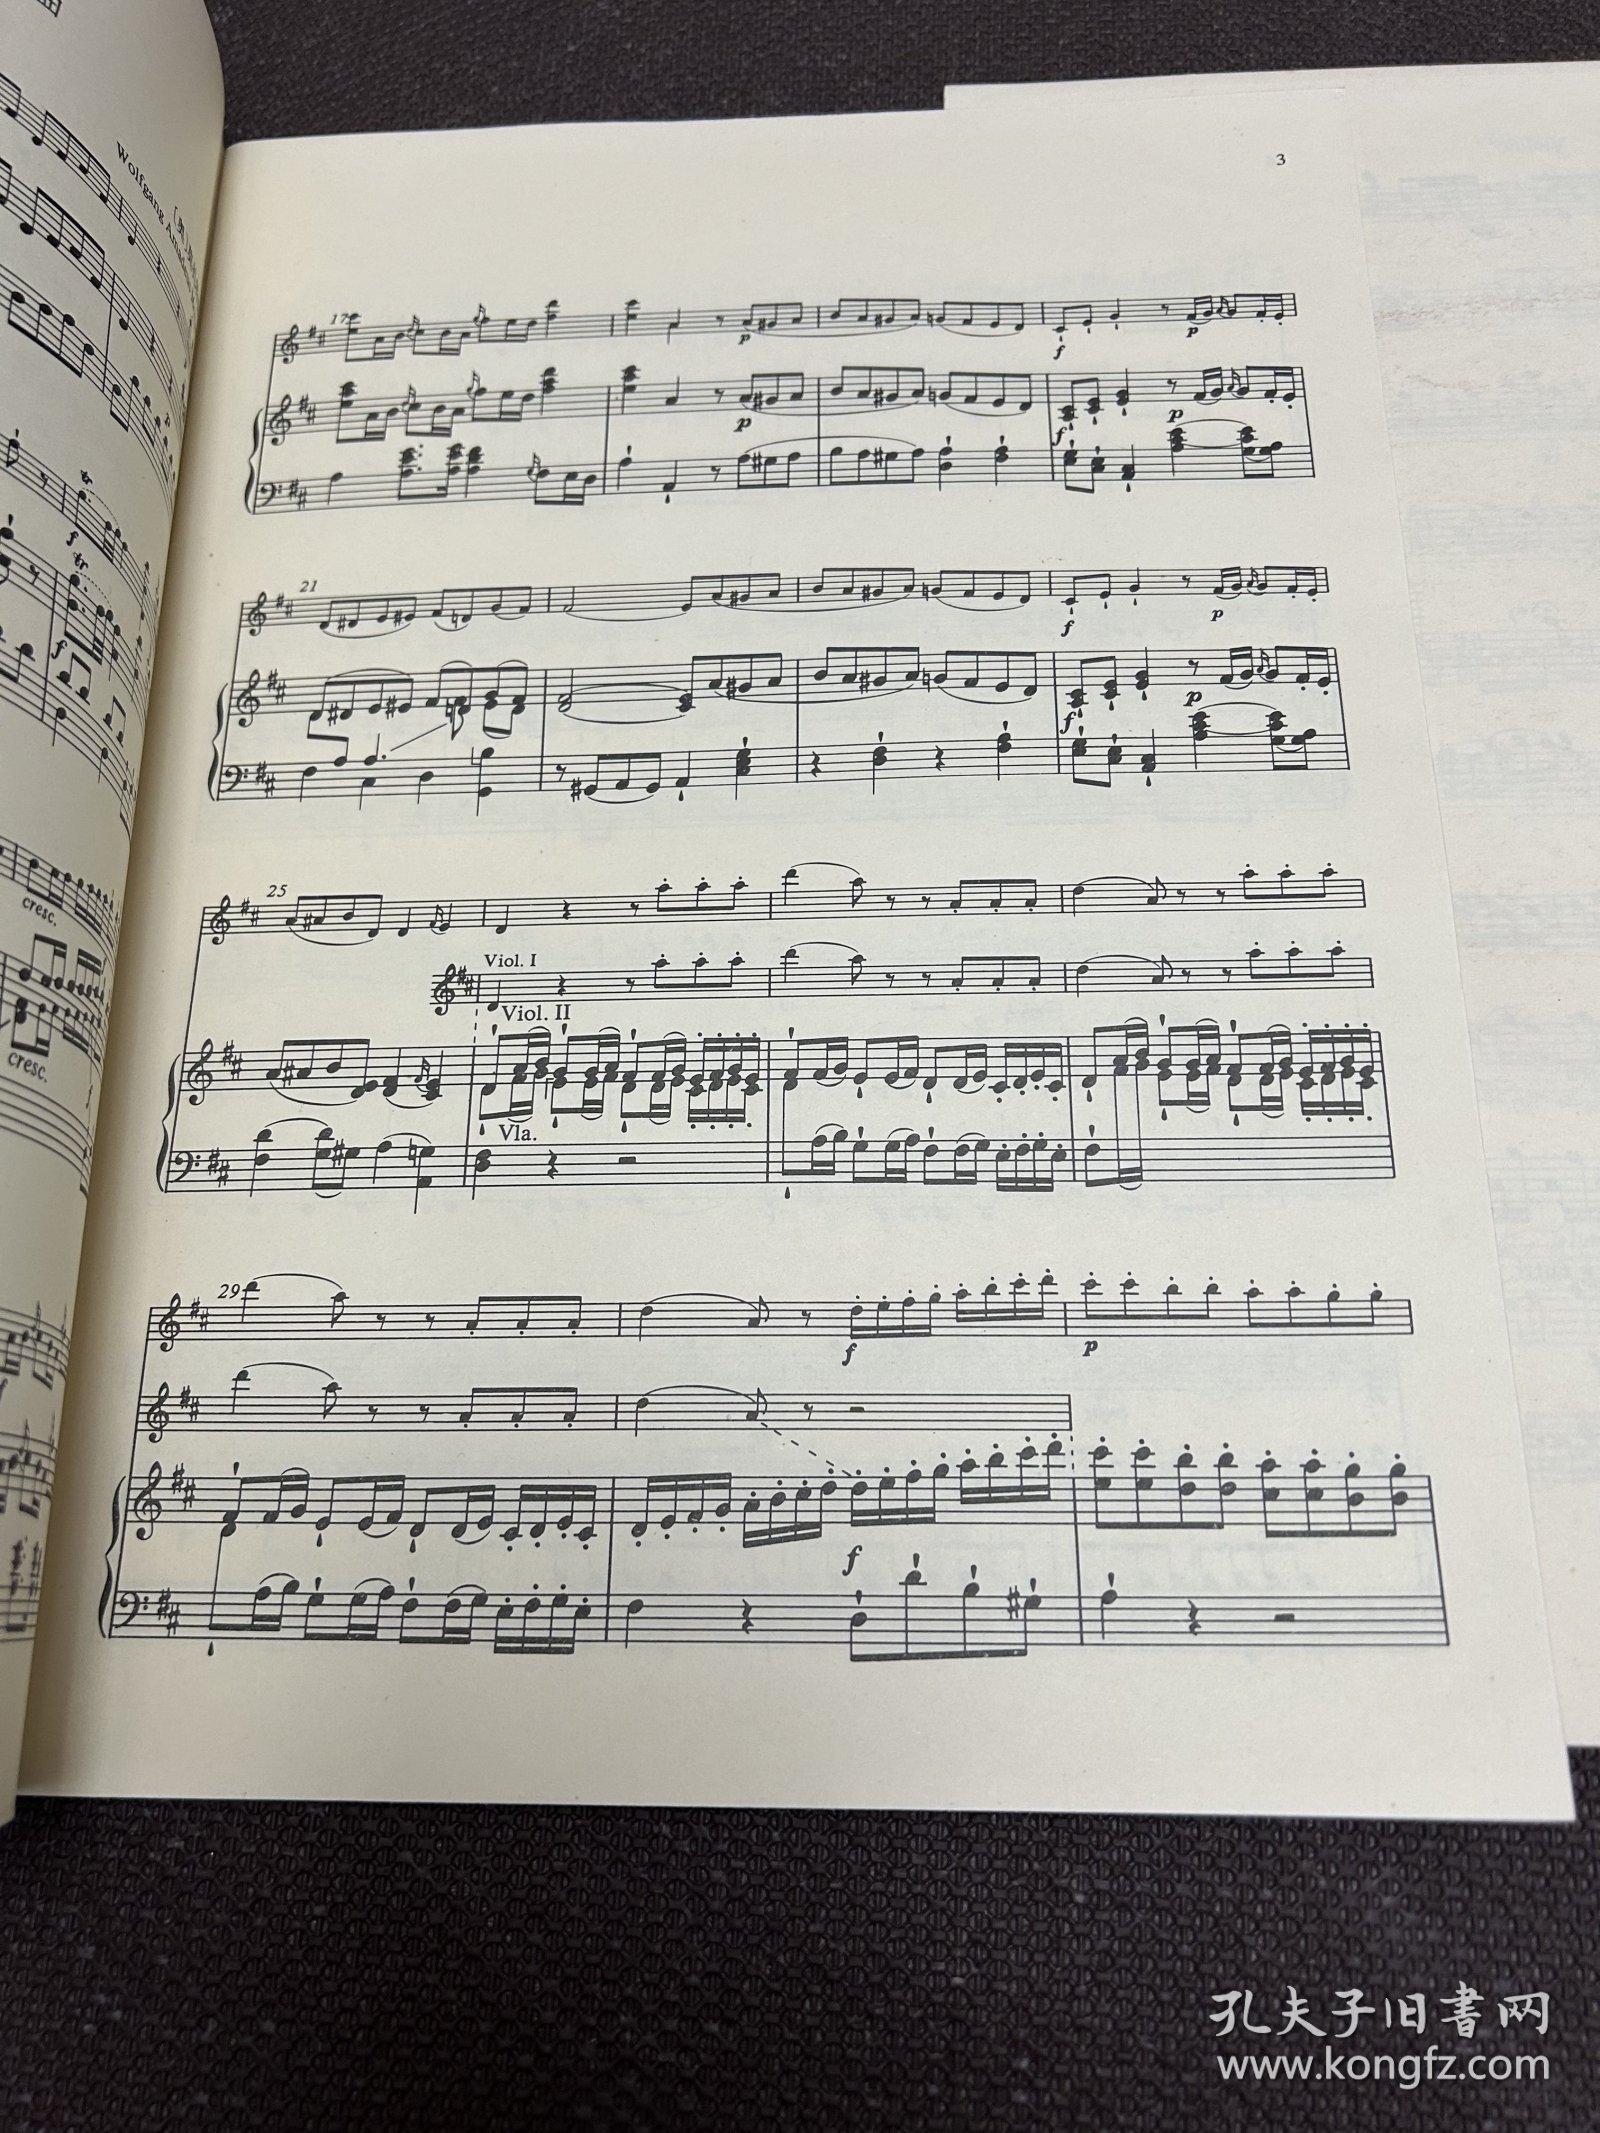 莫扎特D大调第四小提琴协奏曲：小提琴与管弦乐队·钢琴缩谱（KV218）